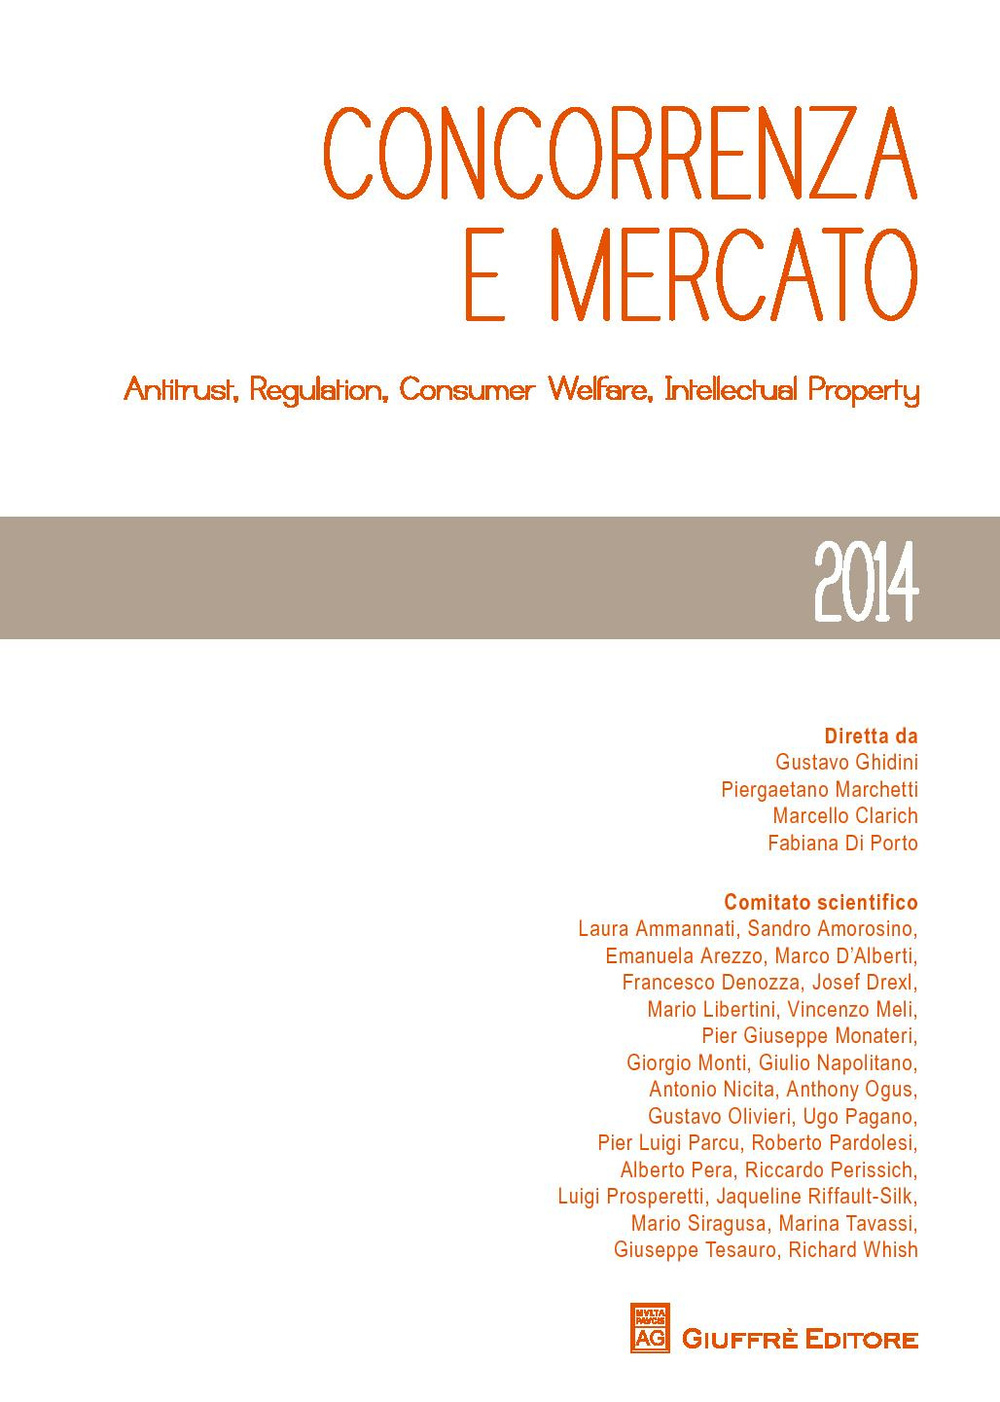 Concorrenza e mercato 2014. Antitrust, regulation, consumer welfare, intellectual property